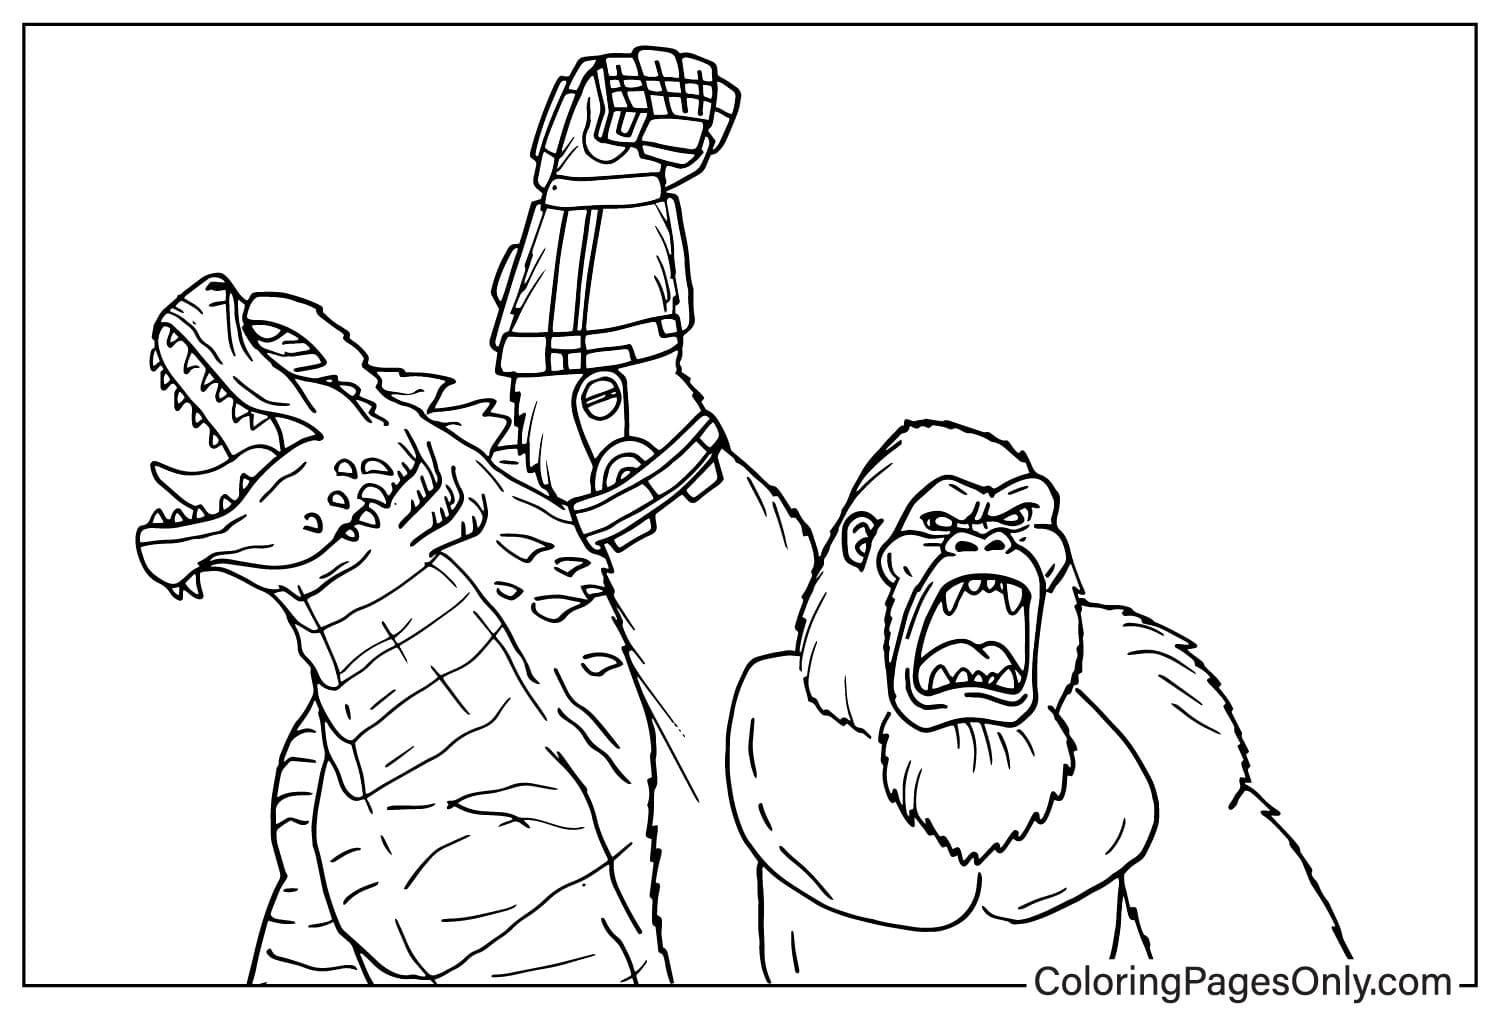 Godzilla x Kong - Le Nouvel Empire Images à colorier de Godzilla x Kong : Le Nouvel Empire